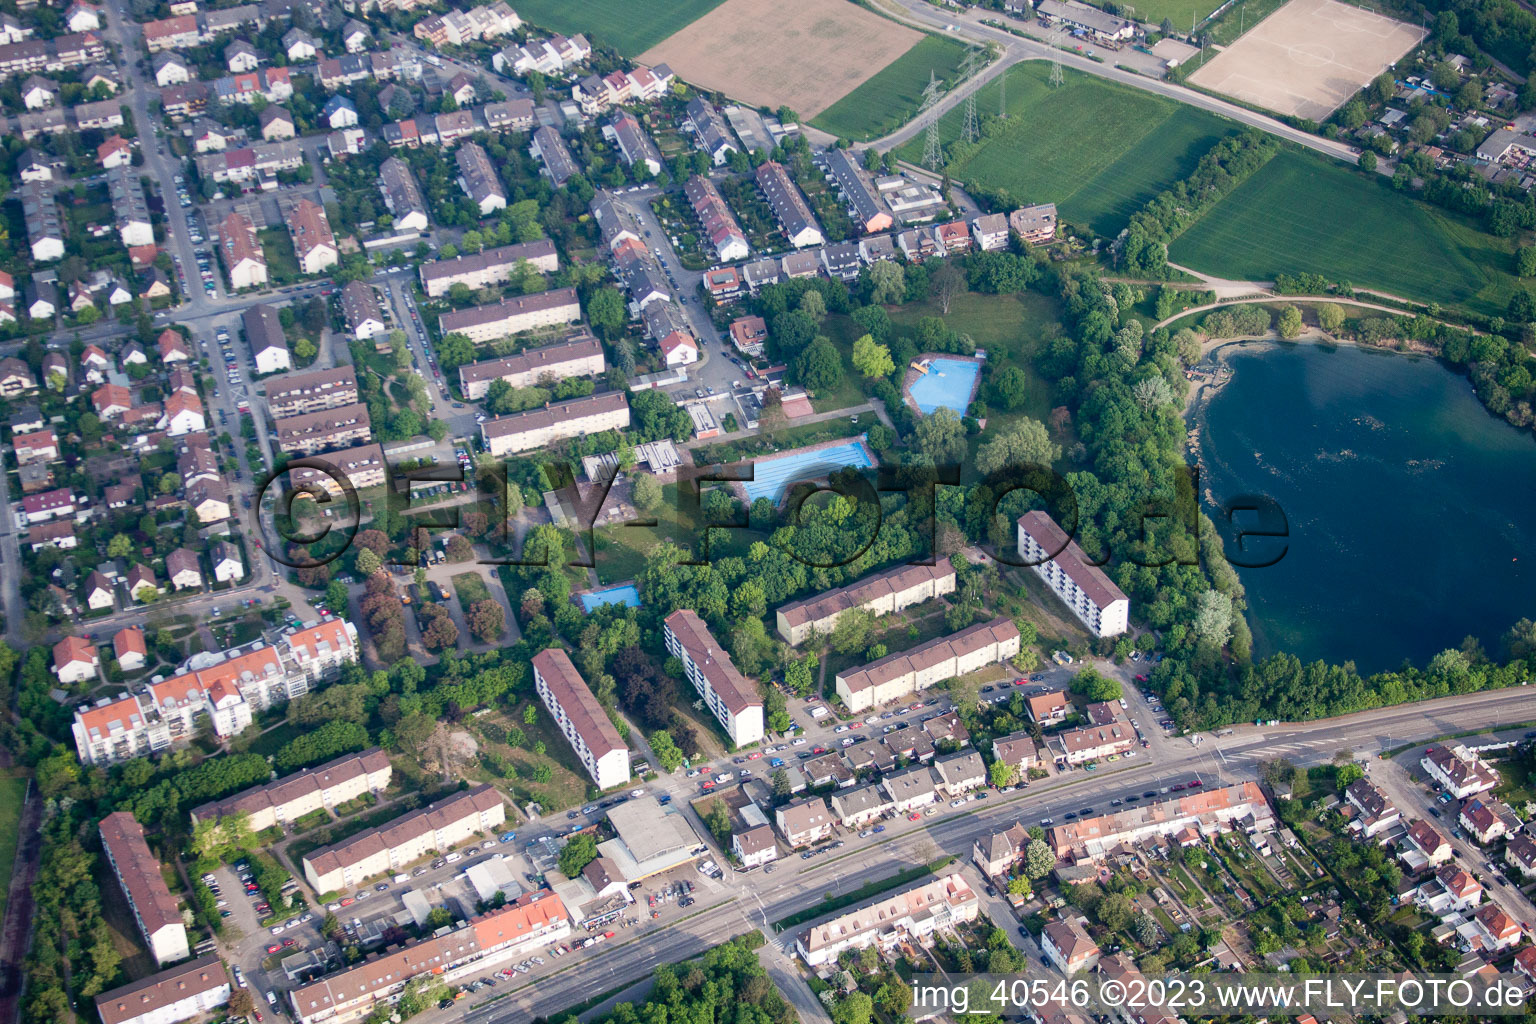 Vue aérienne de Piscine du parc à le quartier Rheinau in Mannheim dans le département Bade-Wurtemberg, Allemagne